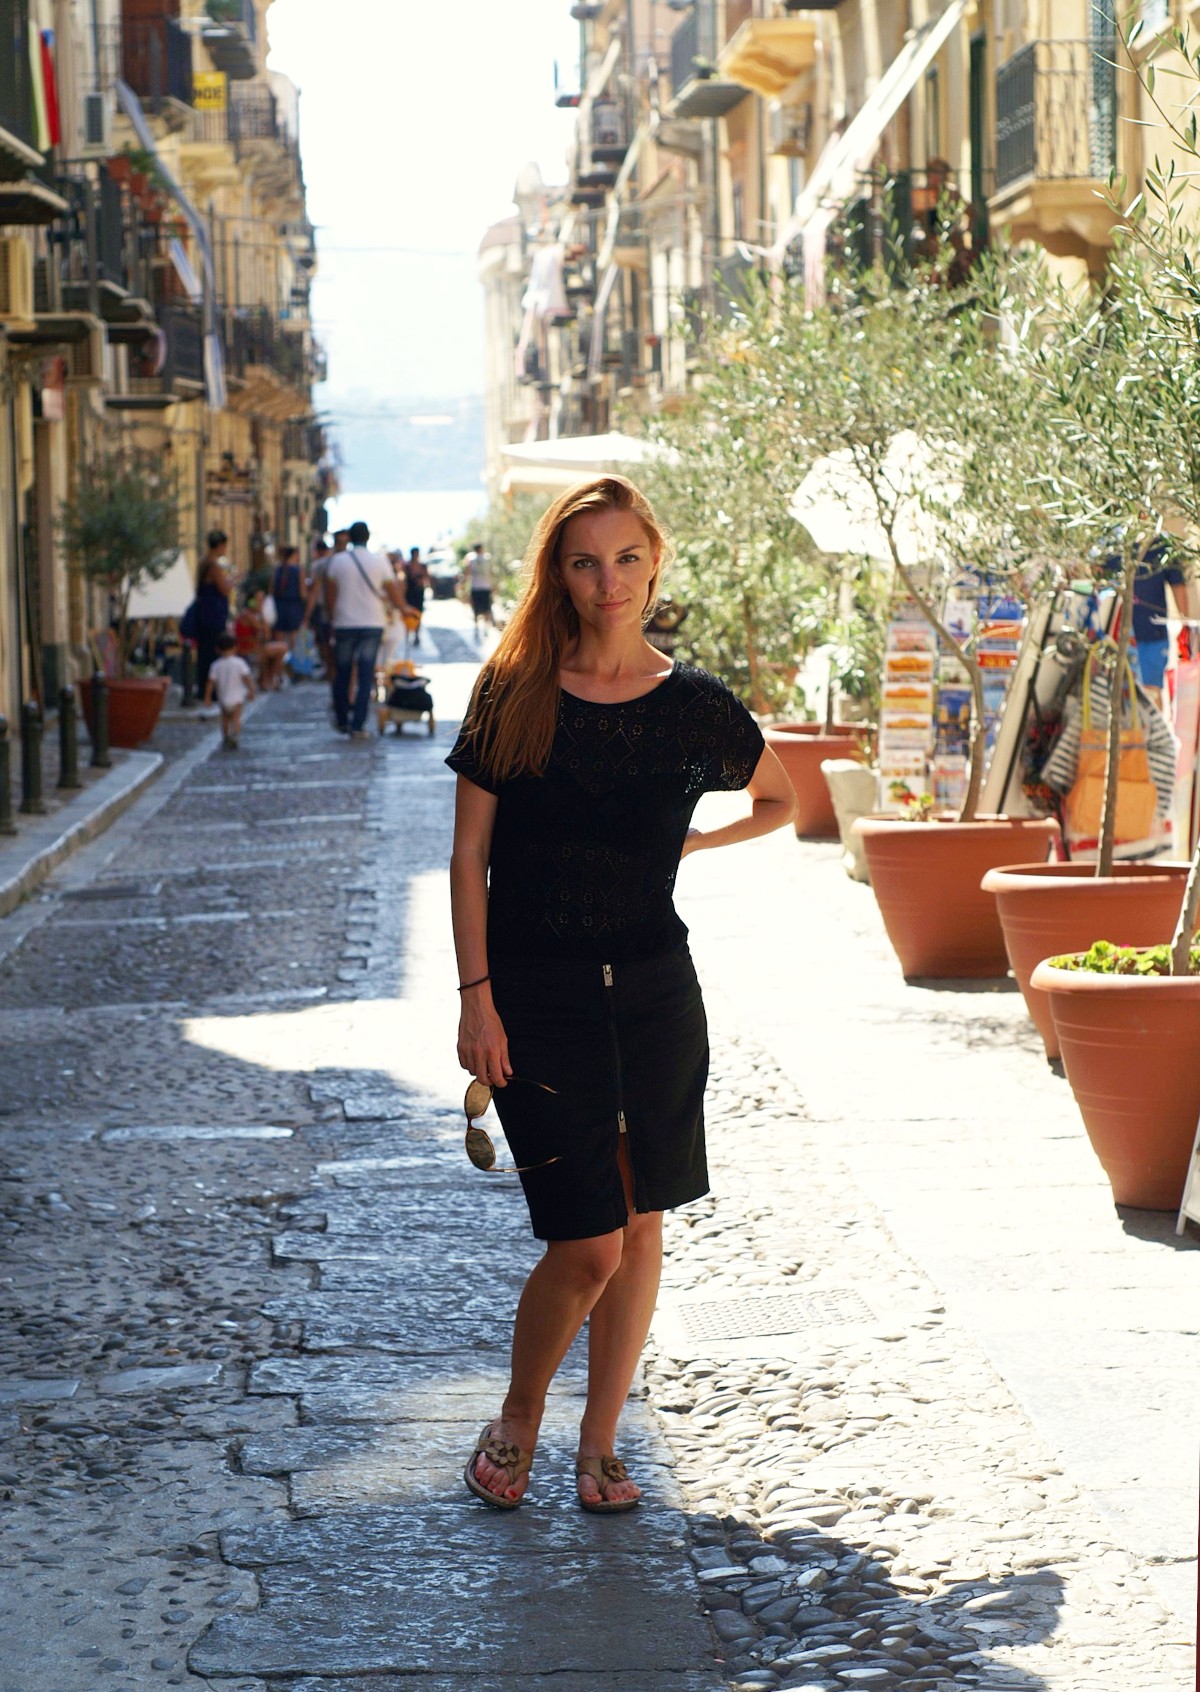 dovolenka sicília tipy najkrajšie miesta